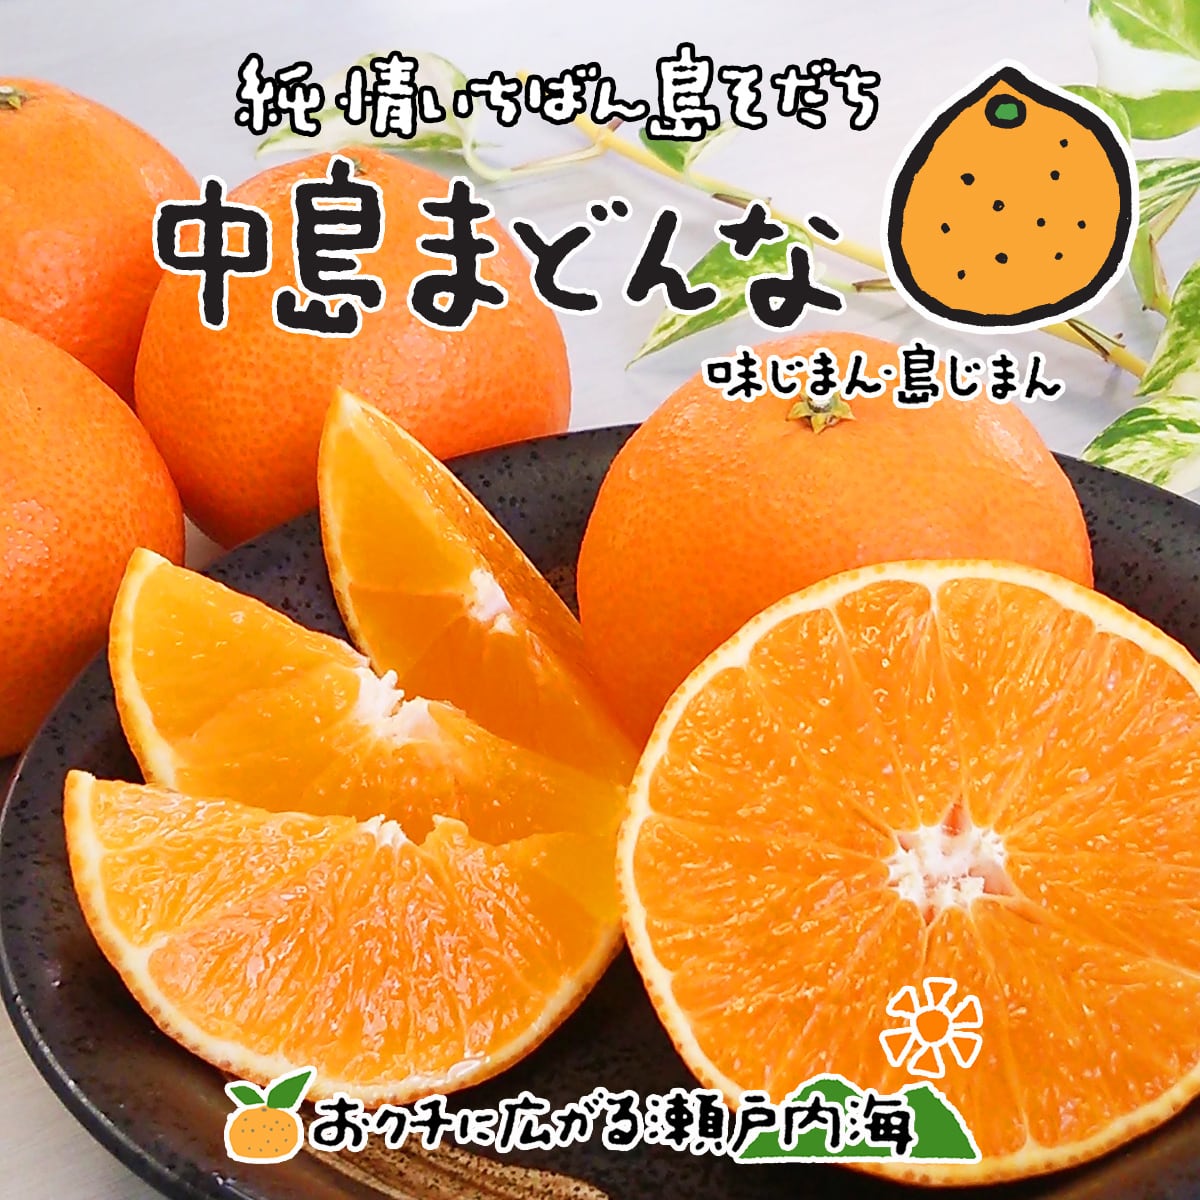 34愛媛　柑橘Queen濃厚まどんな　紅まどんな同品種　愛果28号　家庭用9kg